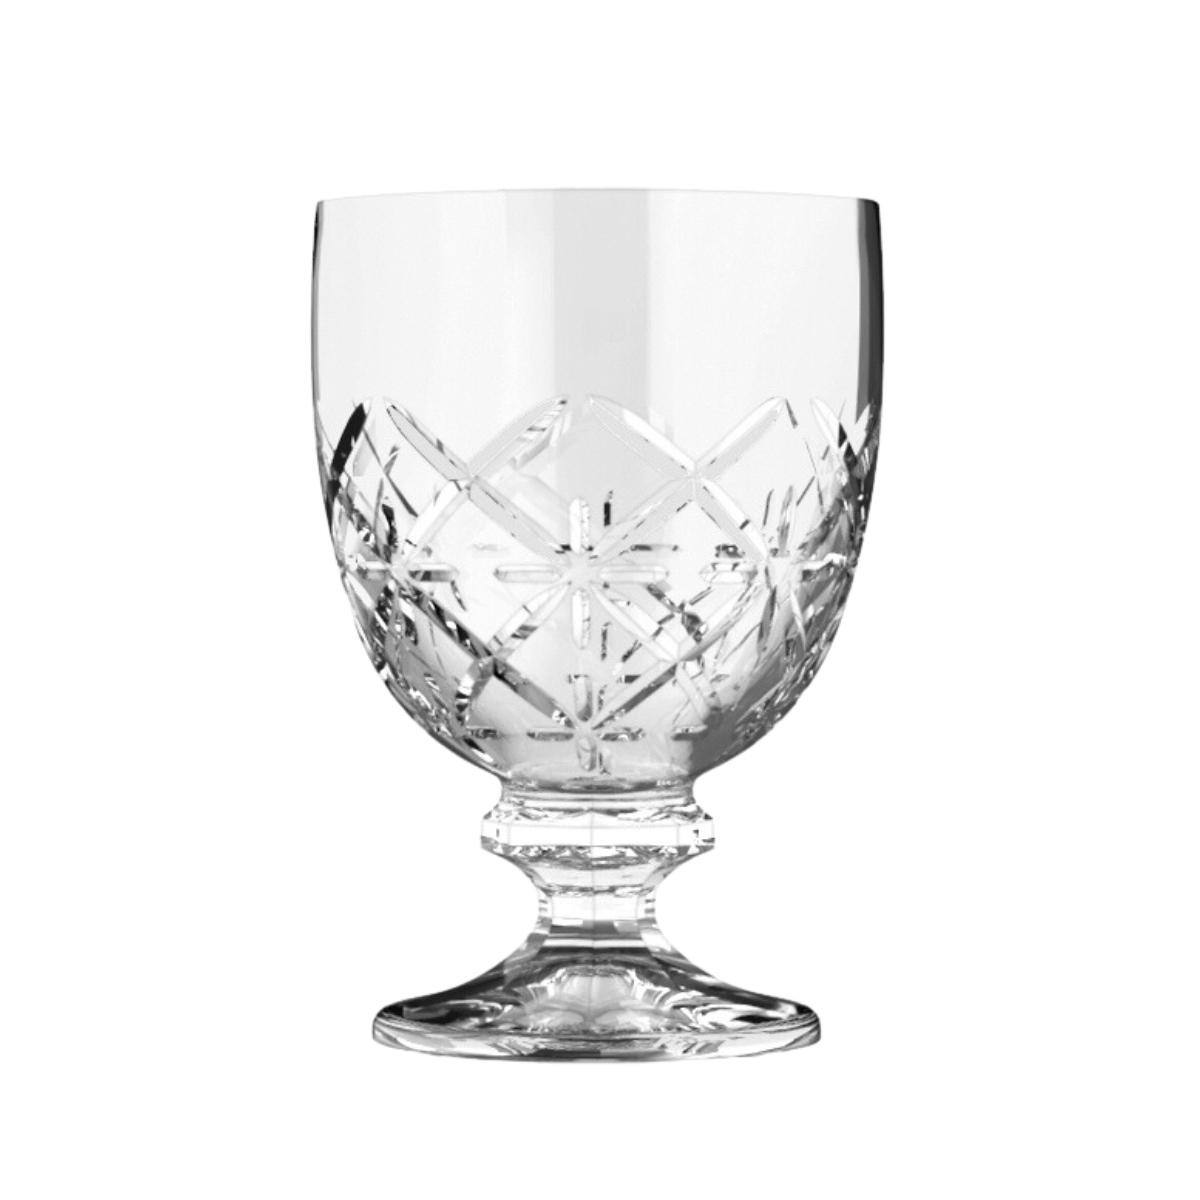 City glass Lausanne Stemware 220 ml set of 6 pieces Transparent Glass